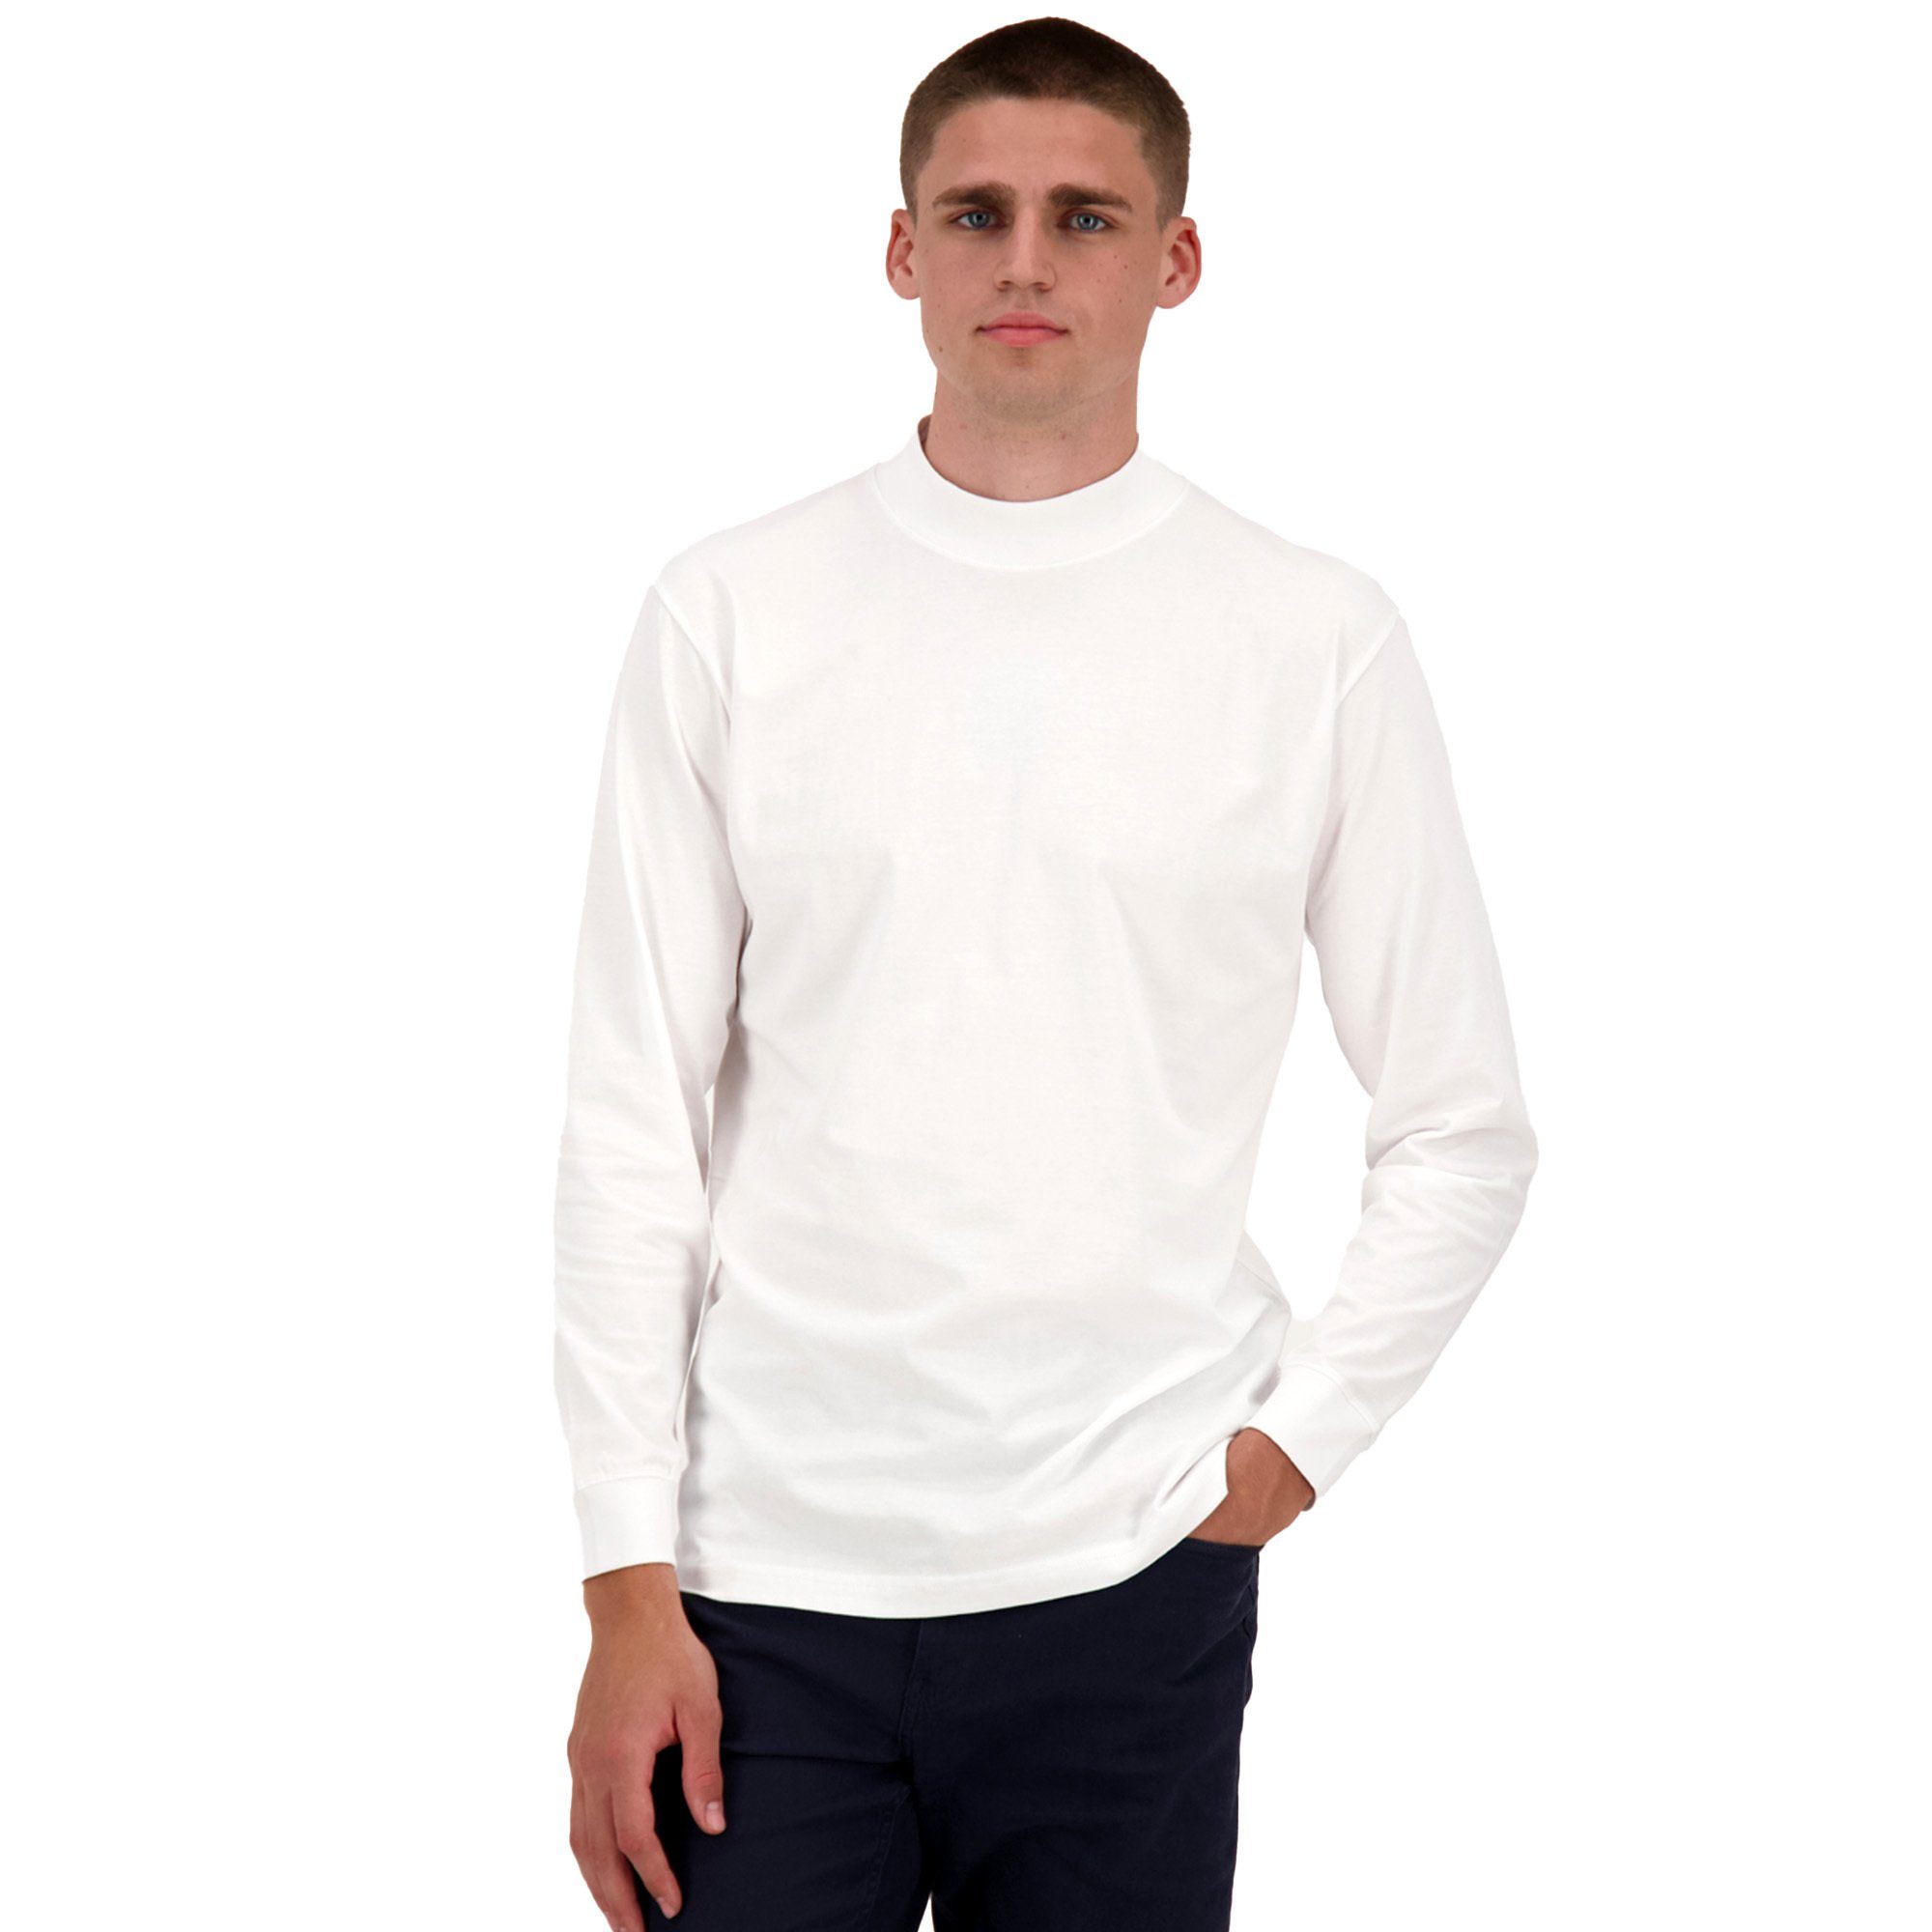 RAGMAN Sweatshirt Herren - Basic Langarm Stehkragen-Pullover Weiß